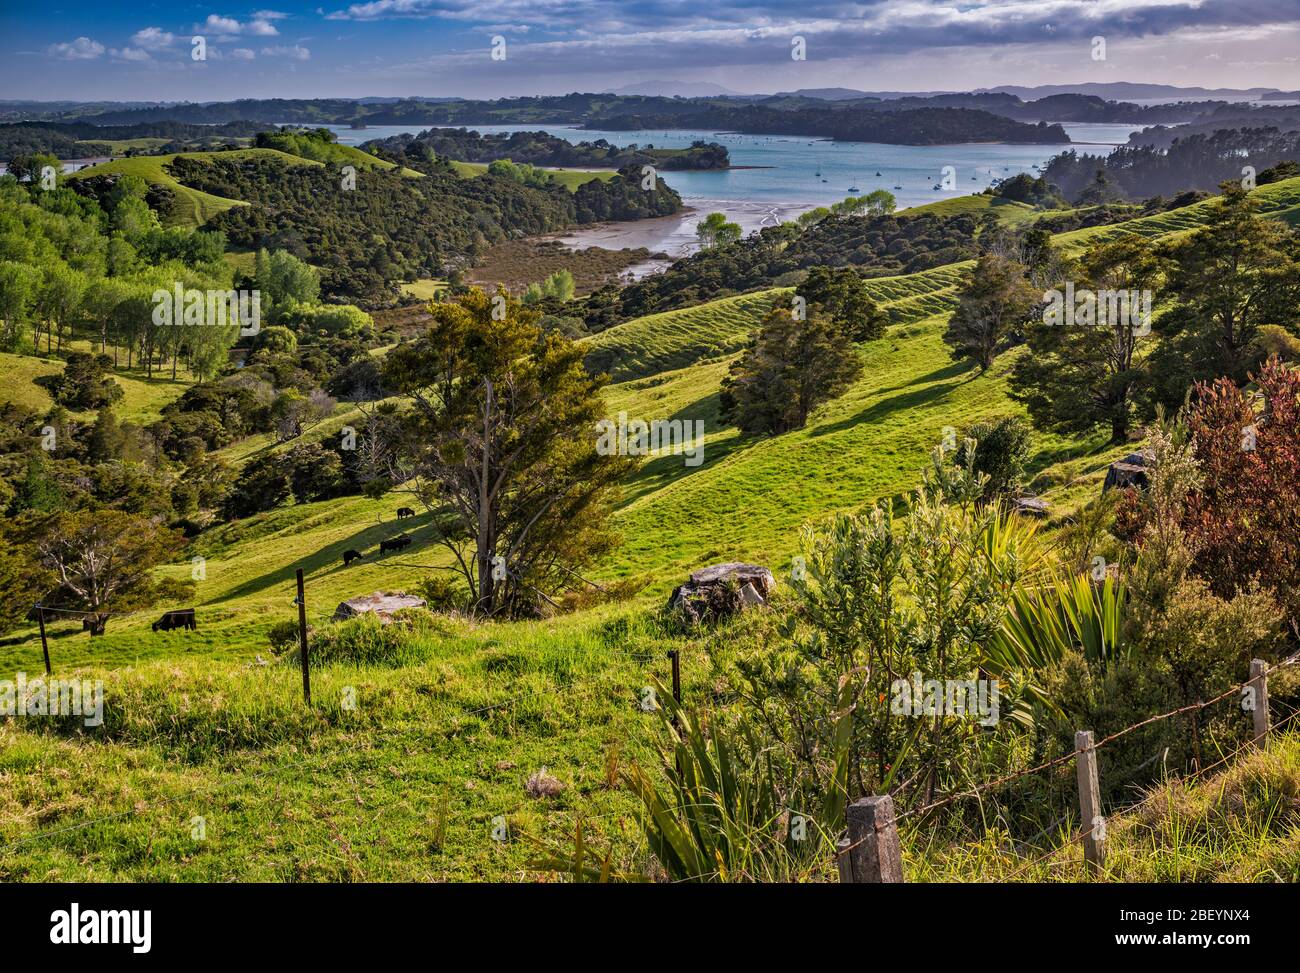 Kawau Bay, vista sulle colline vicino alla città di Snells Beach, Penisola Mahurangi, Auckland Regione, Isola del Nord, Nuova Zelanda Foto Stock